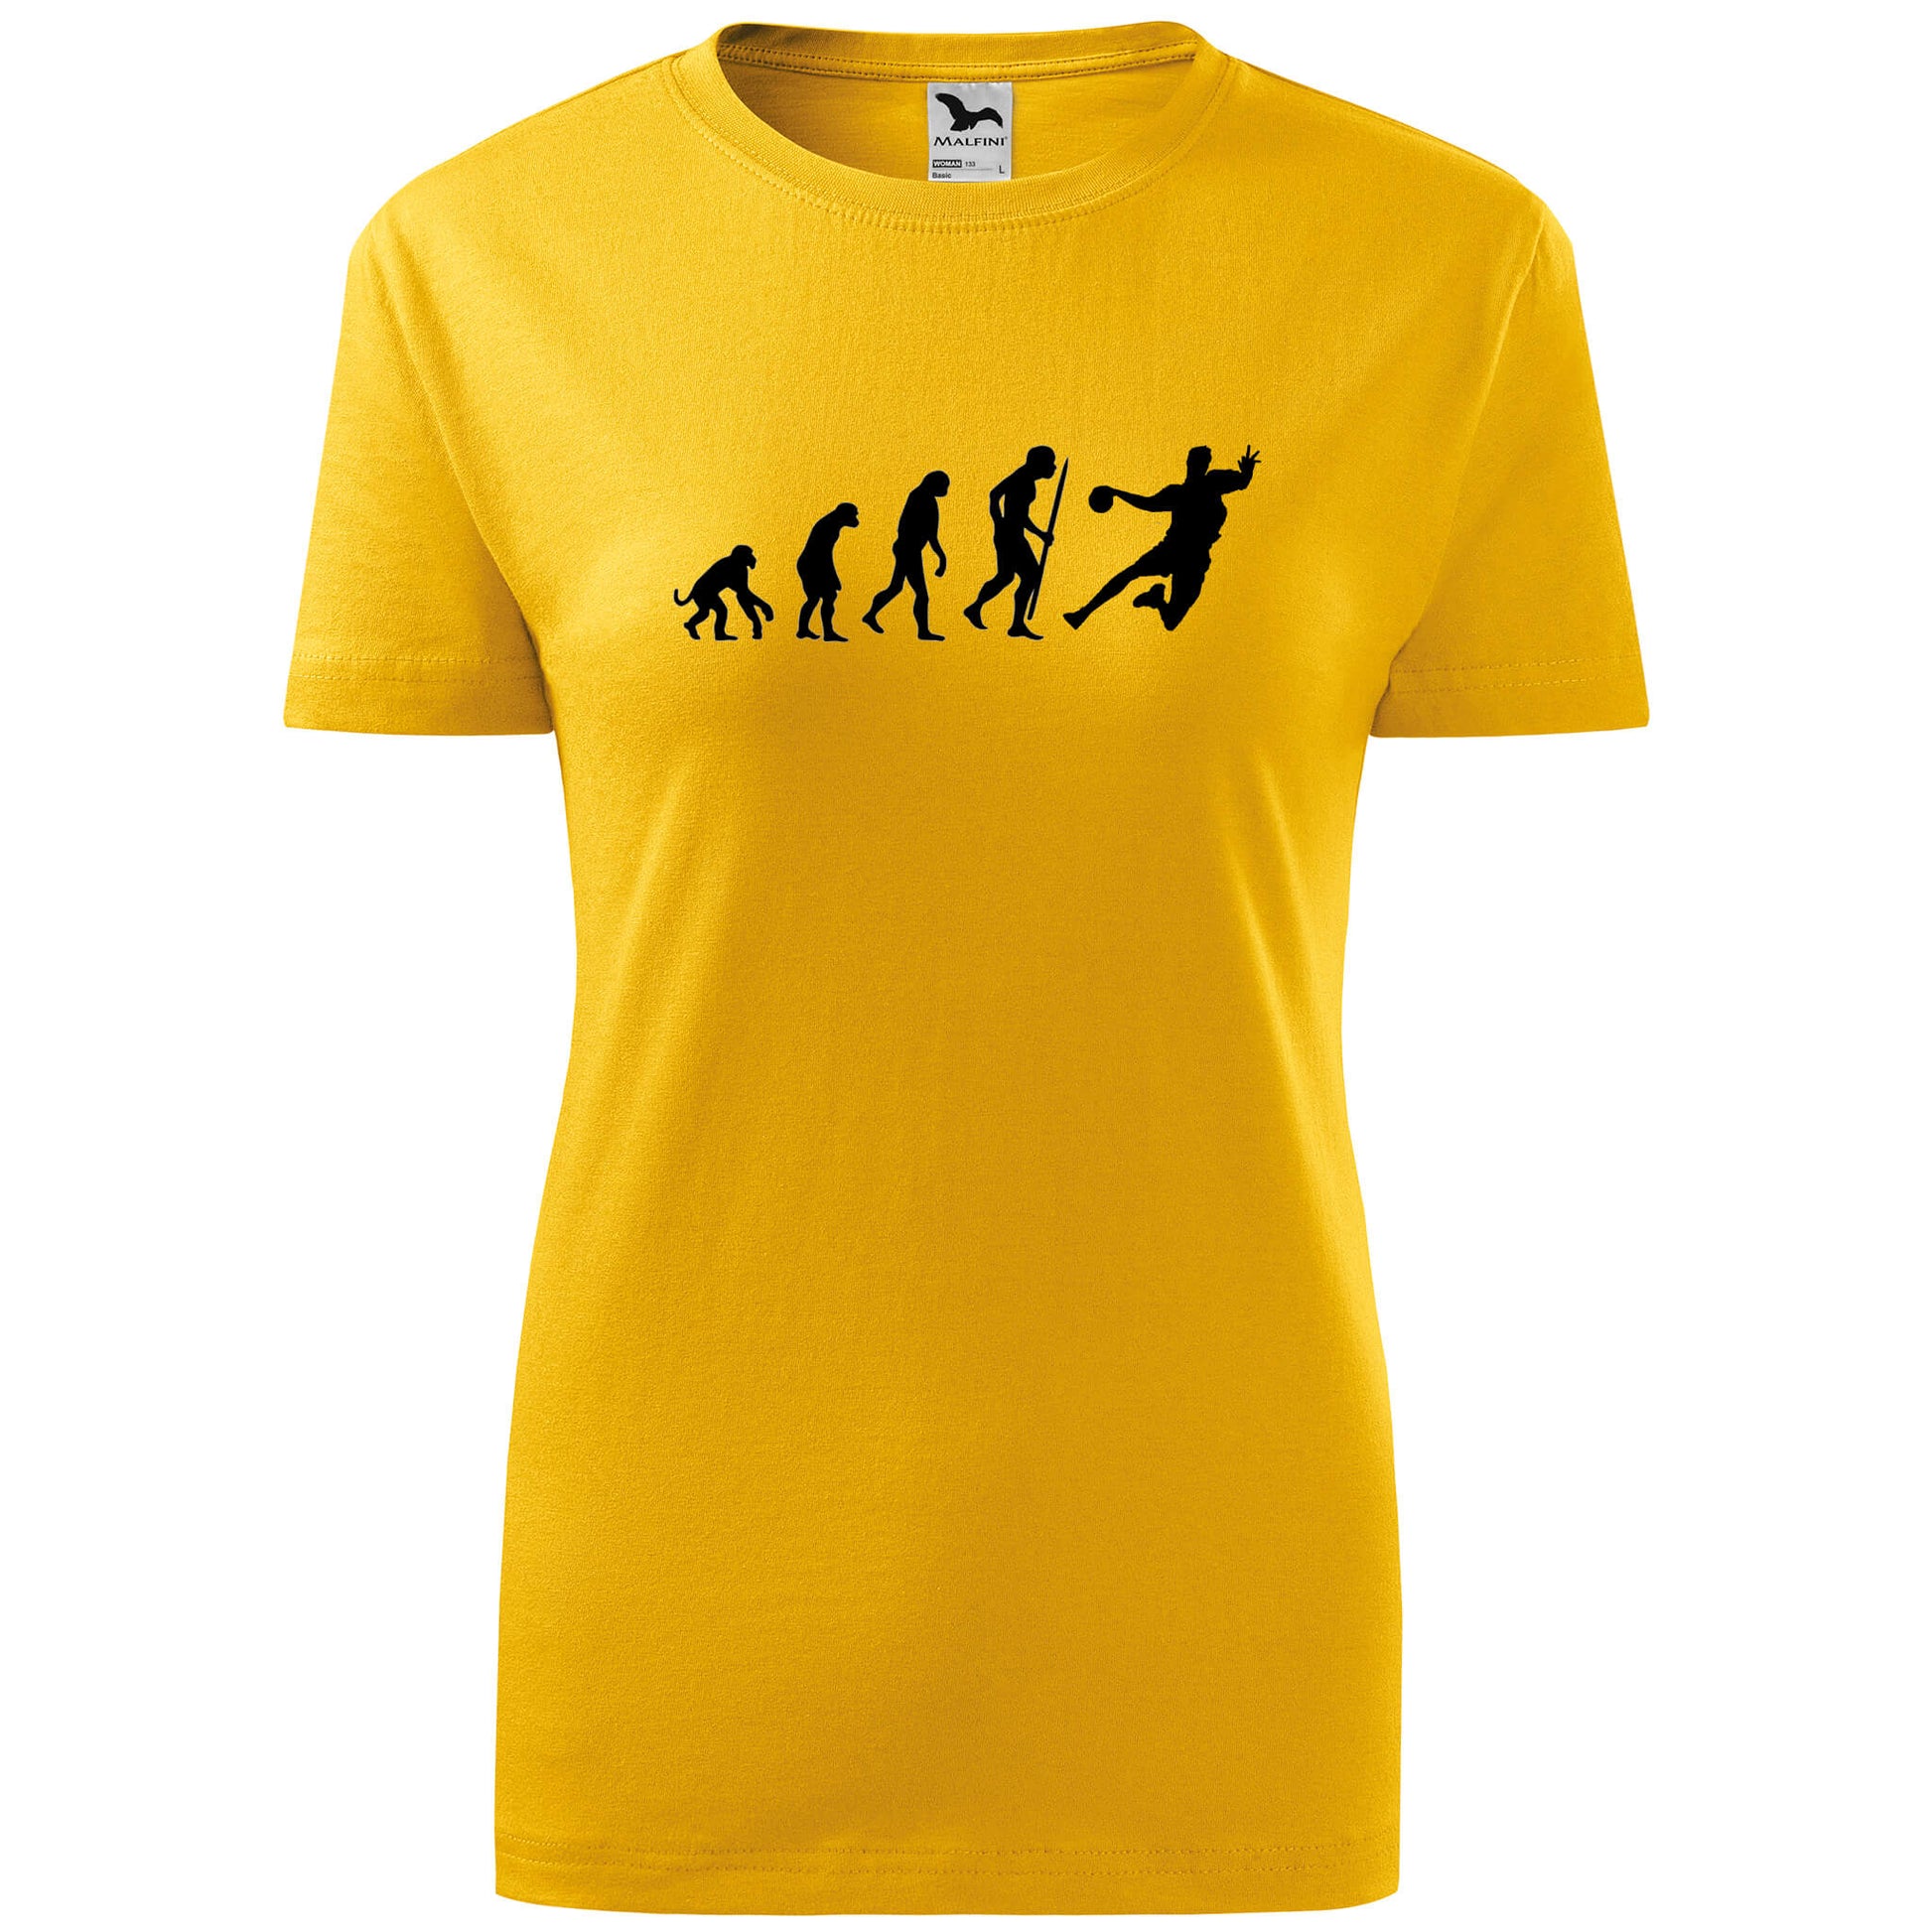 T-shirt - Evolution - Handball - rvdesignprint